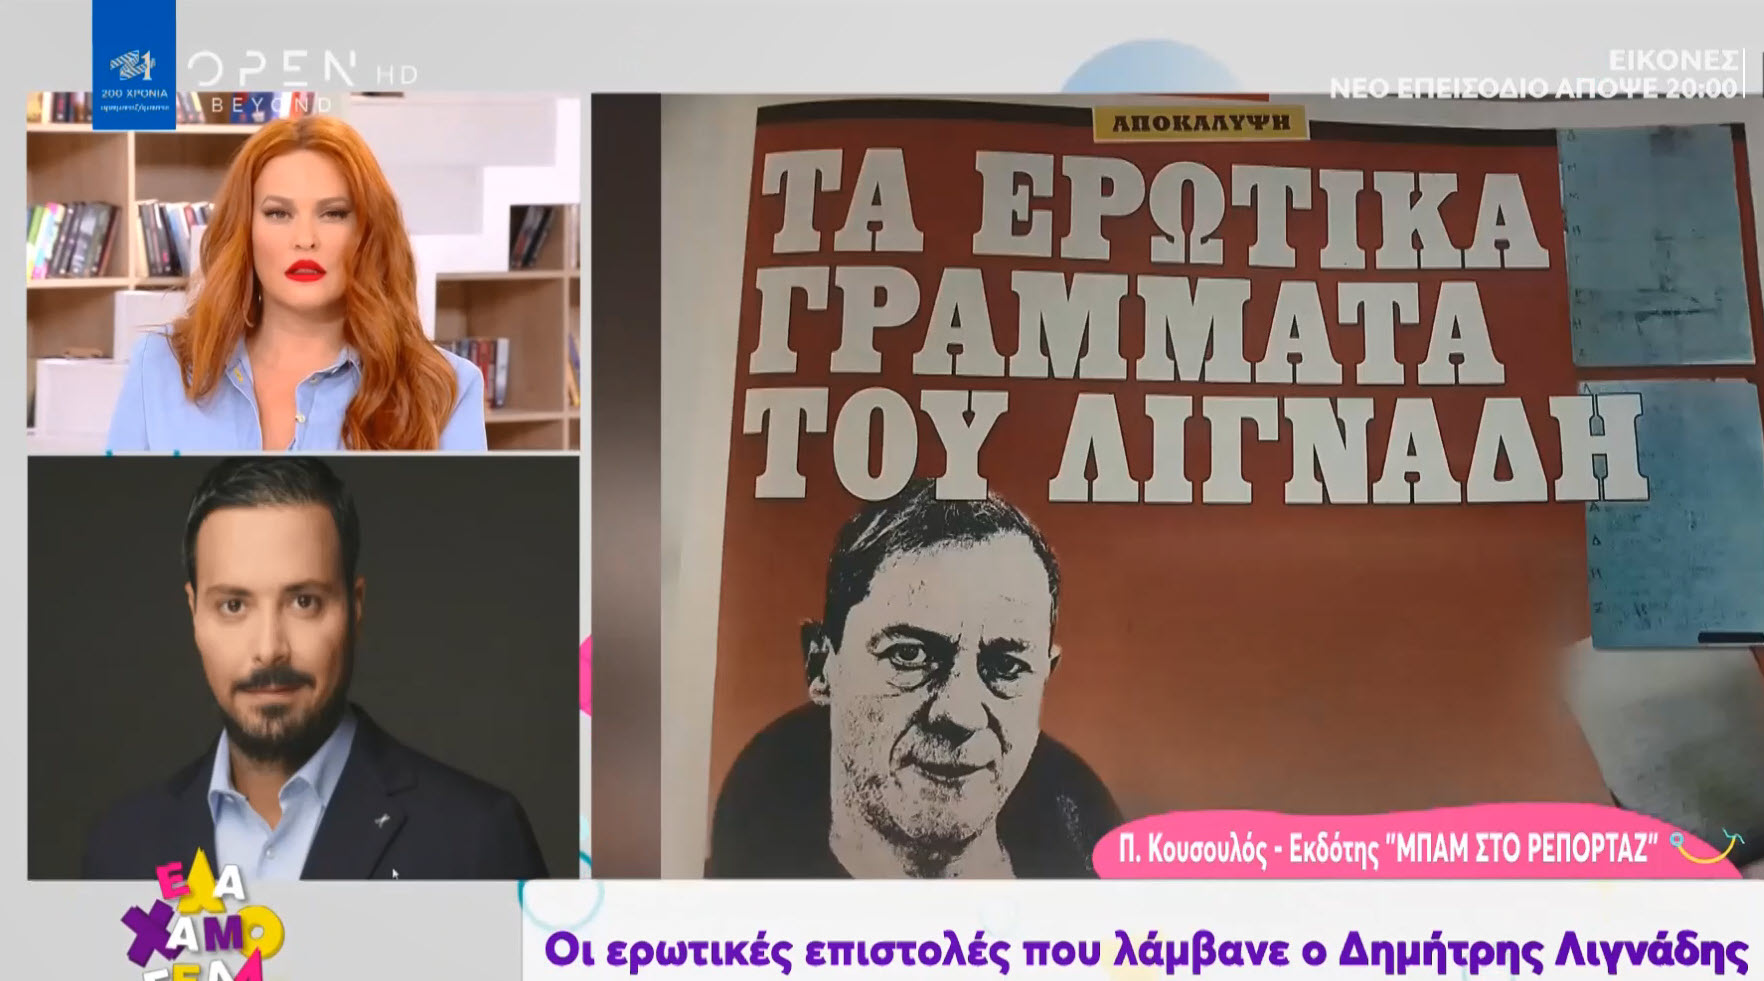 Δημήτρης Λιγνάδης: Οι επιστολές πάθους που άργησαν να κατασχέσουν οι αρχές και αποκάλυψε η "ΜΠΑΜ"(φωτό - βίντεο)